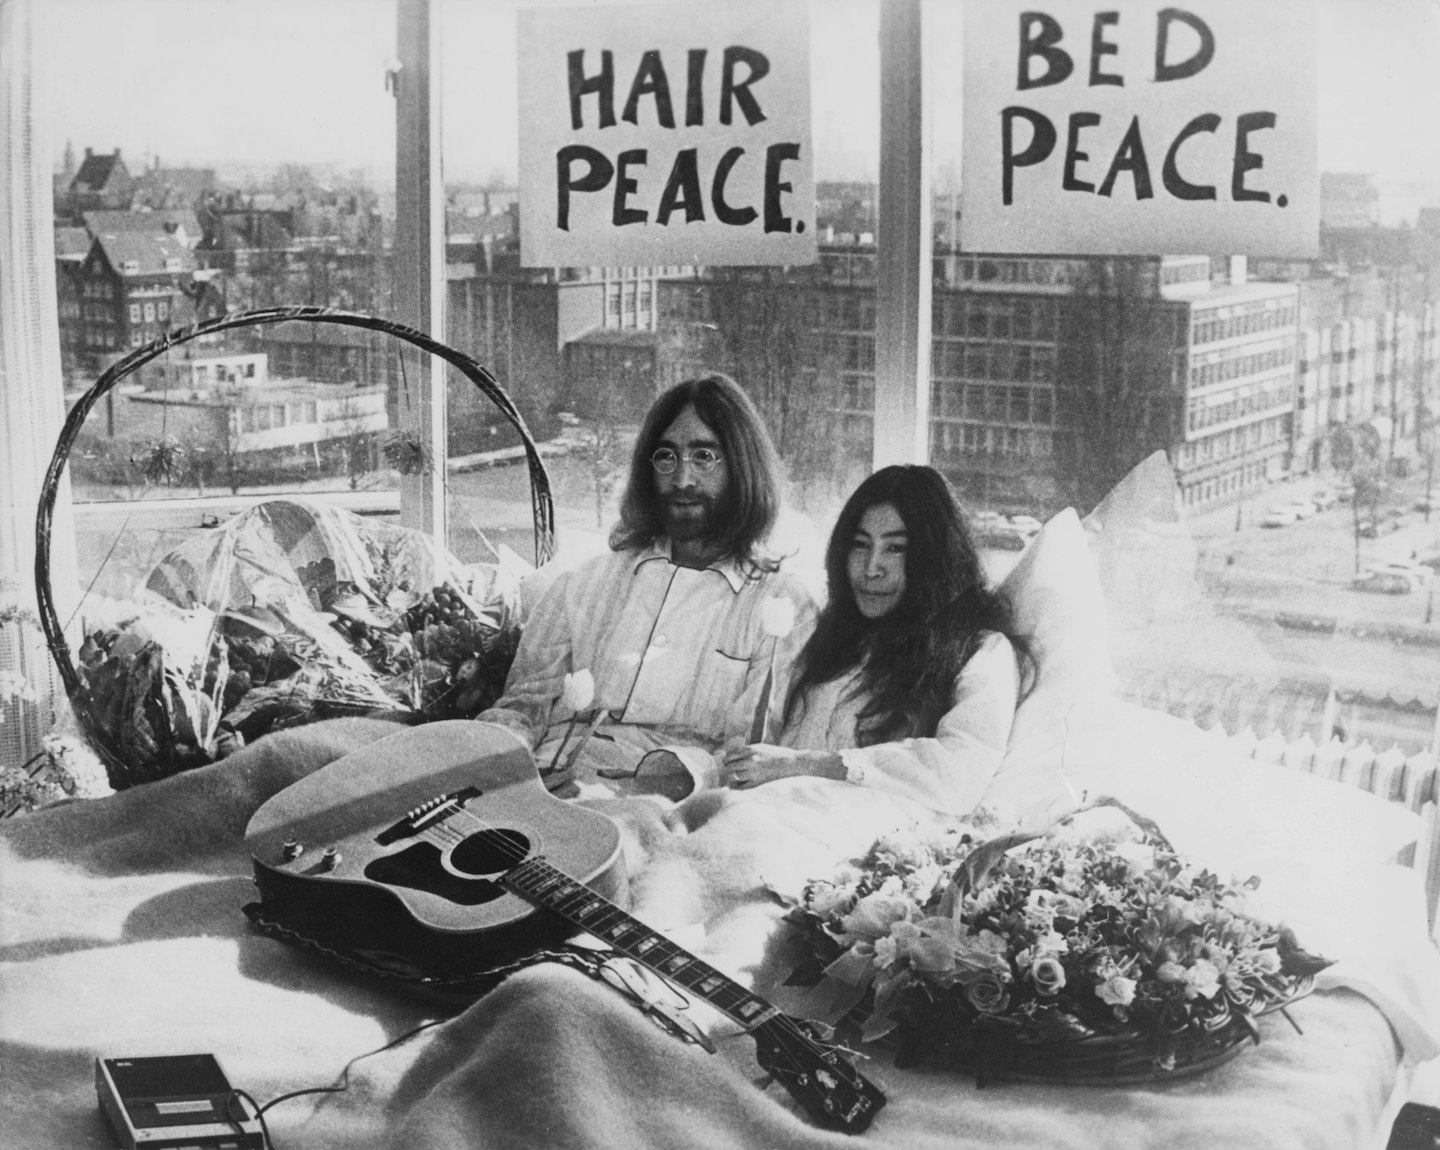 1969 – John Lennon and Yoko Ono